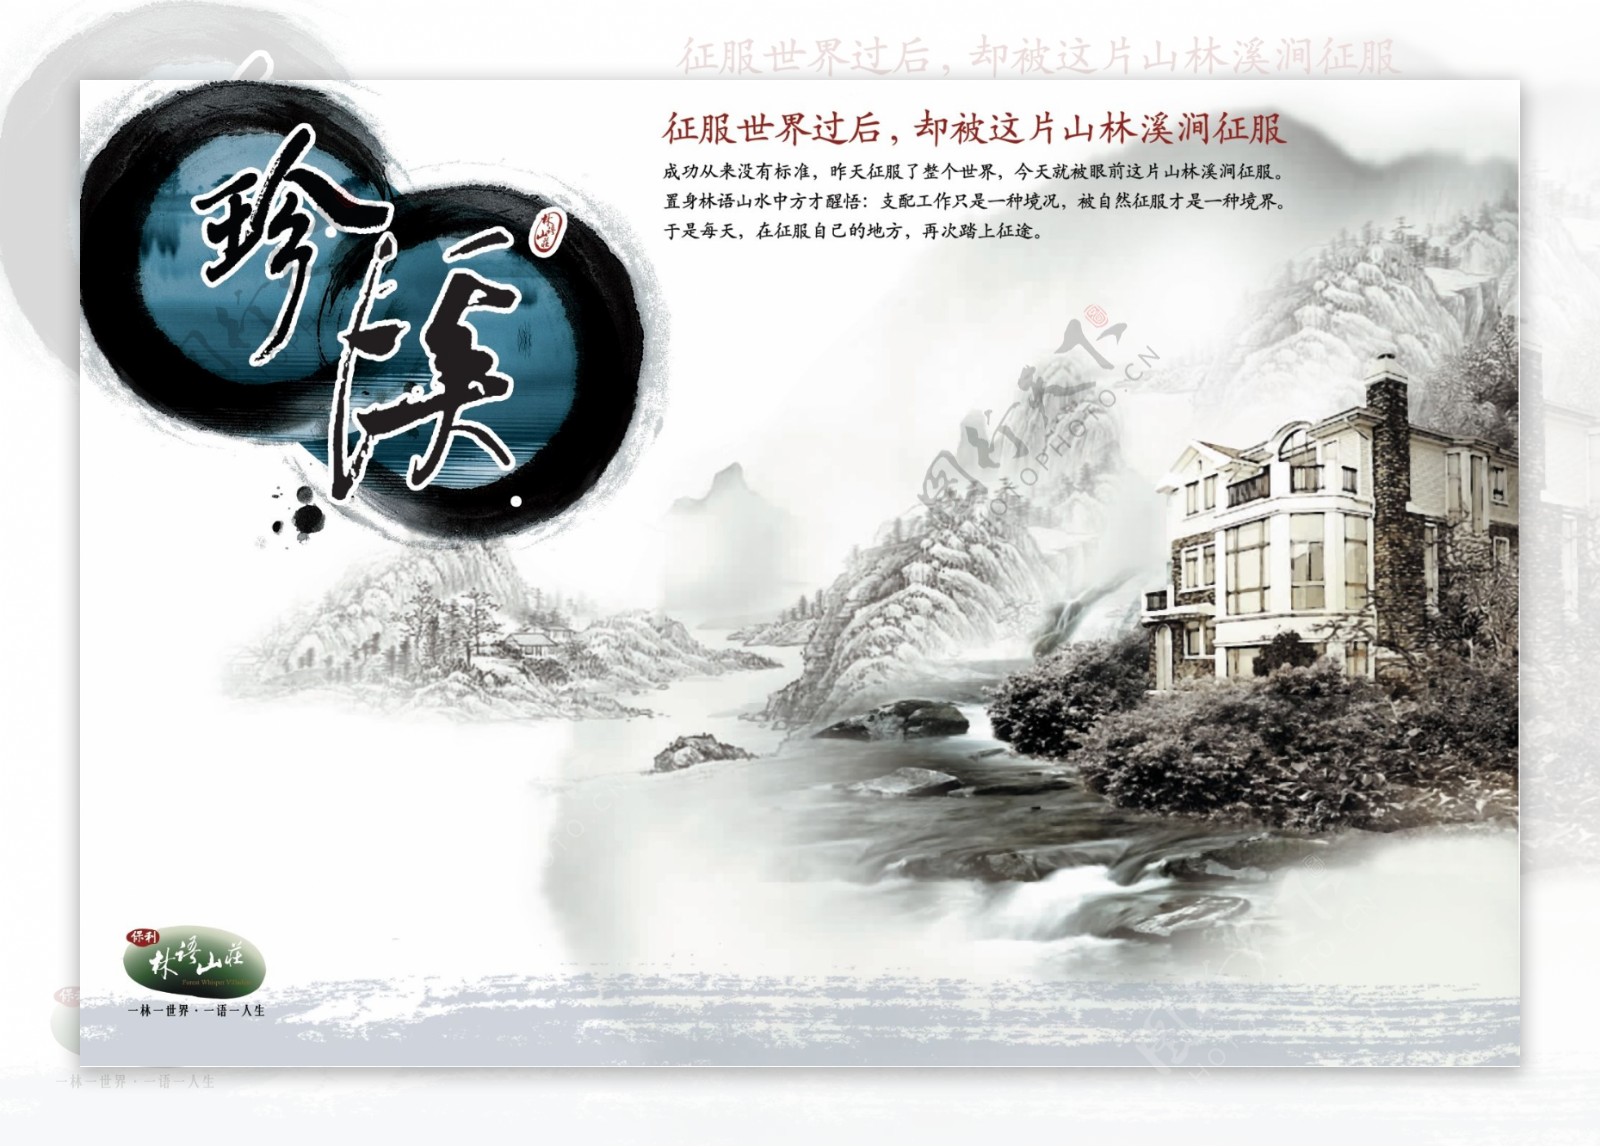 中国风房产海报设计素材